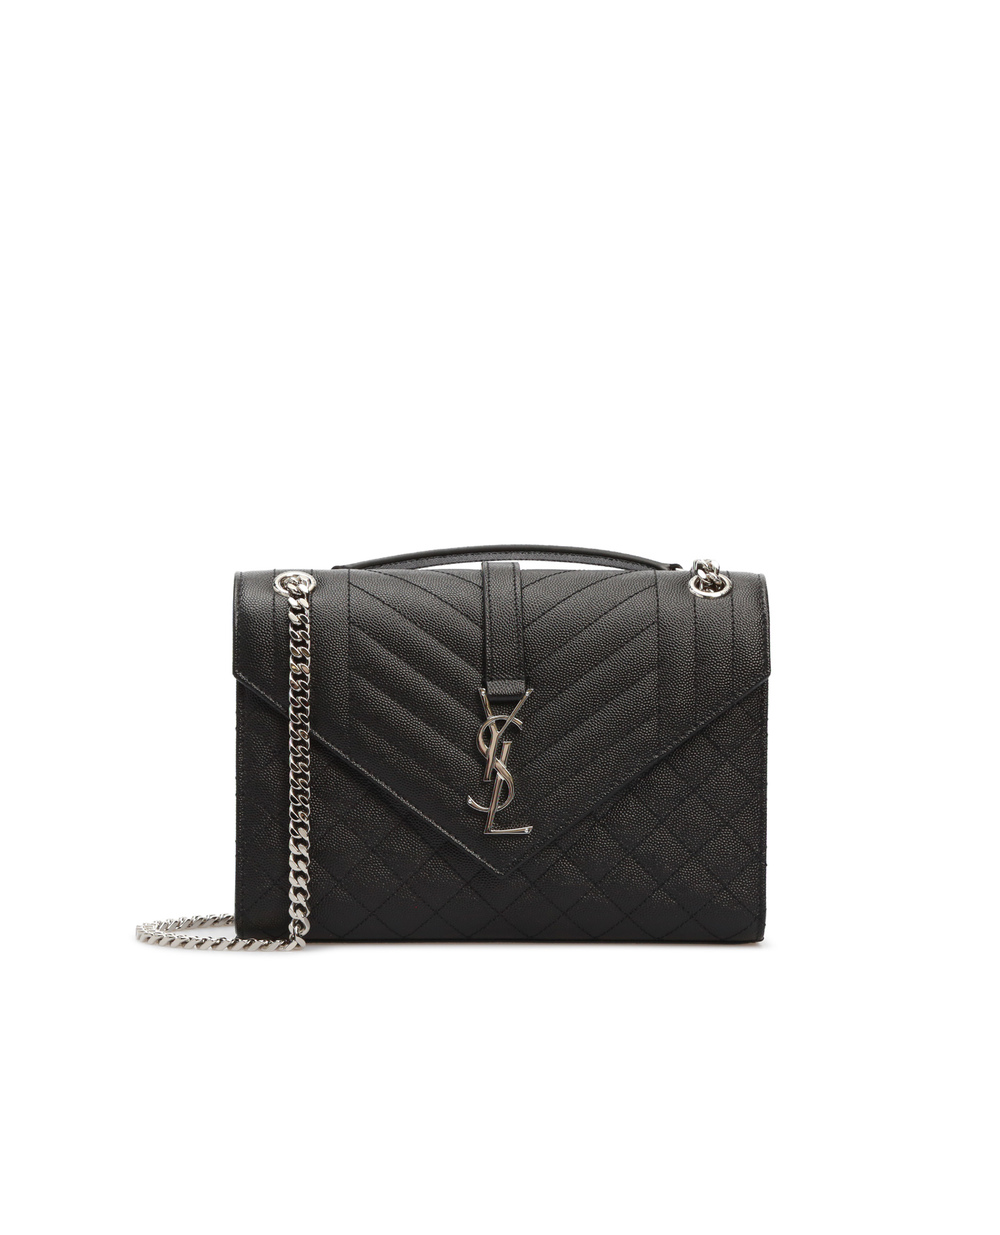 Кожаная сумка Envelope Medium Saint Laurent 600185-BOW92, черный цвет • Купить в интернет-магазине Kameron